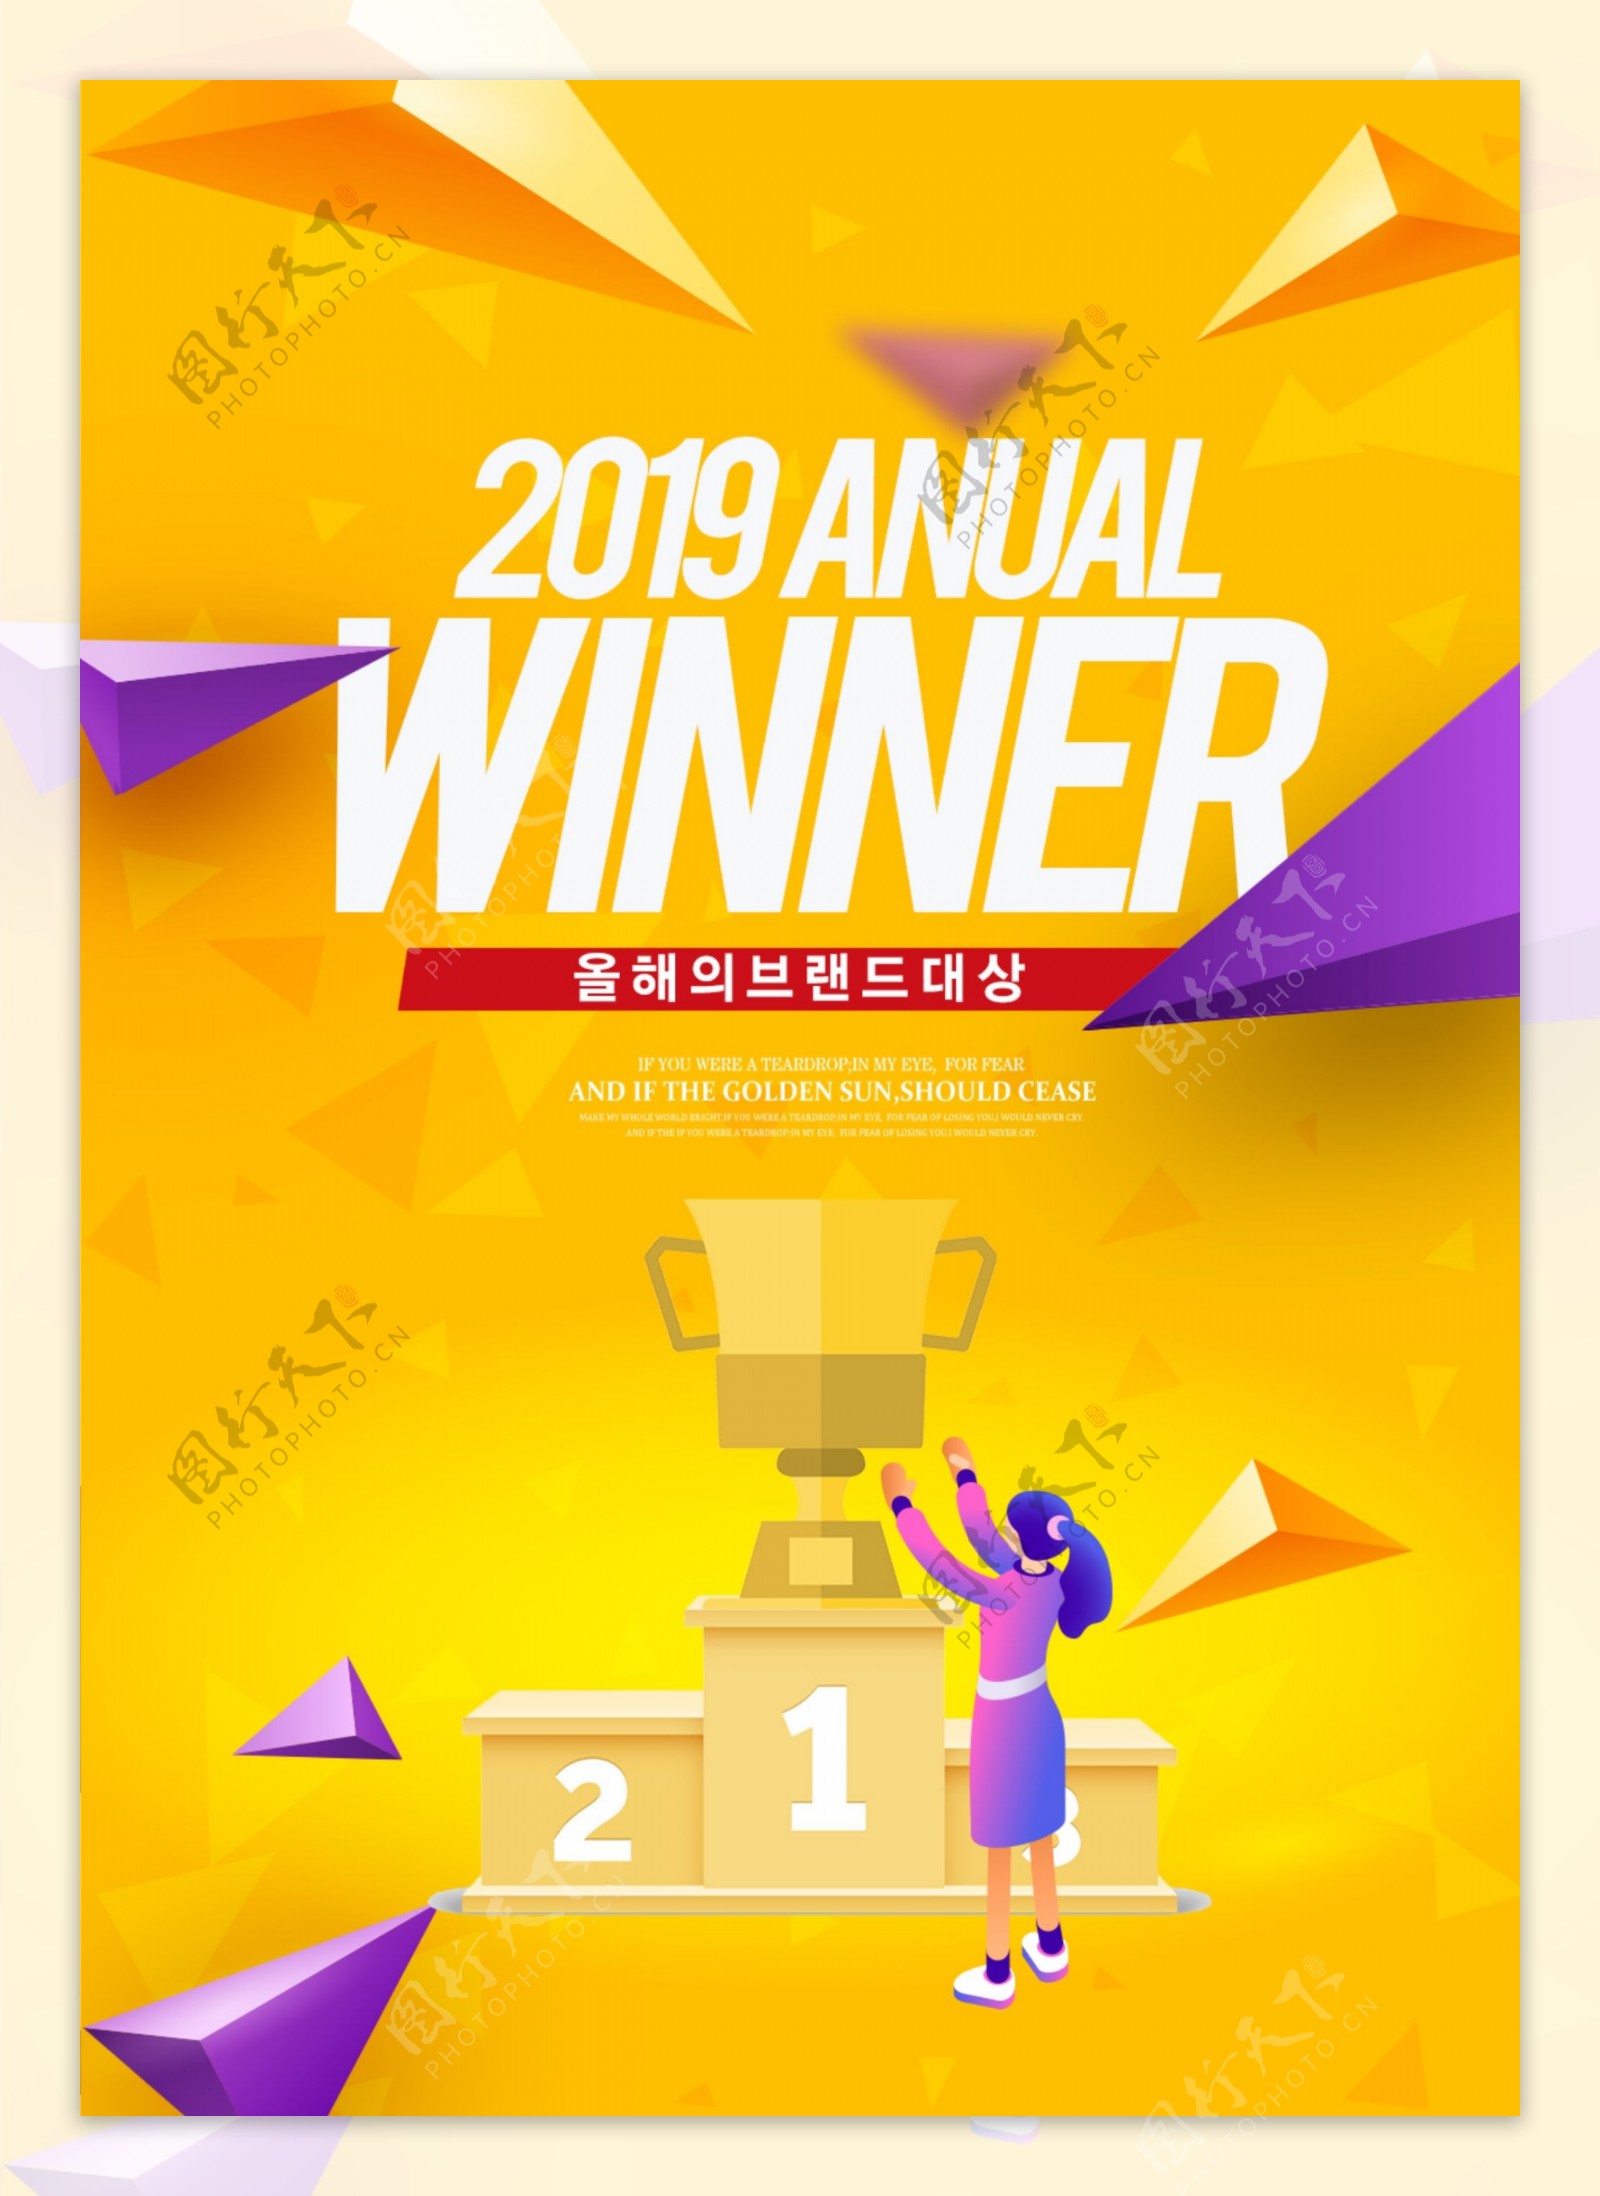 2019年冠军奖杯的时尚彩色海报